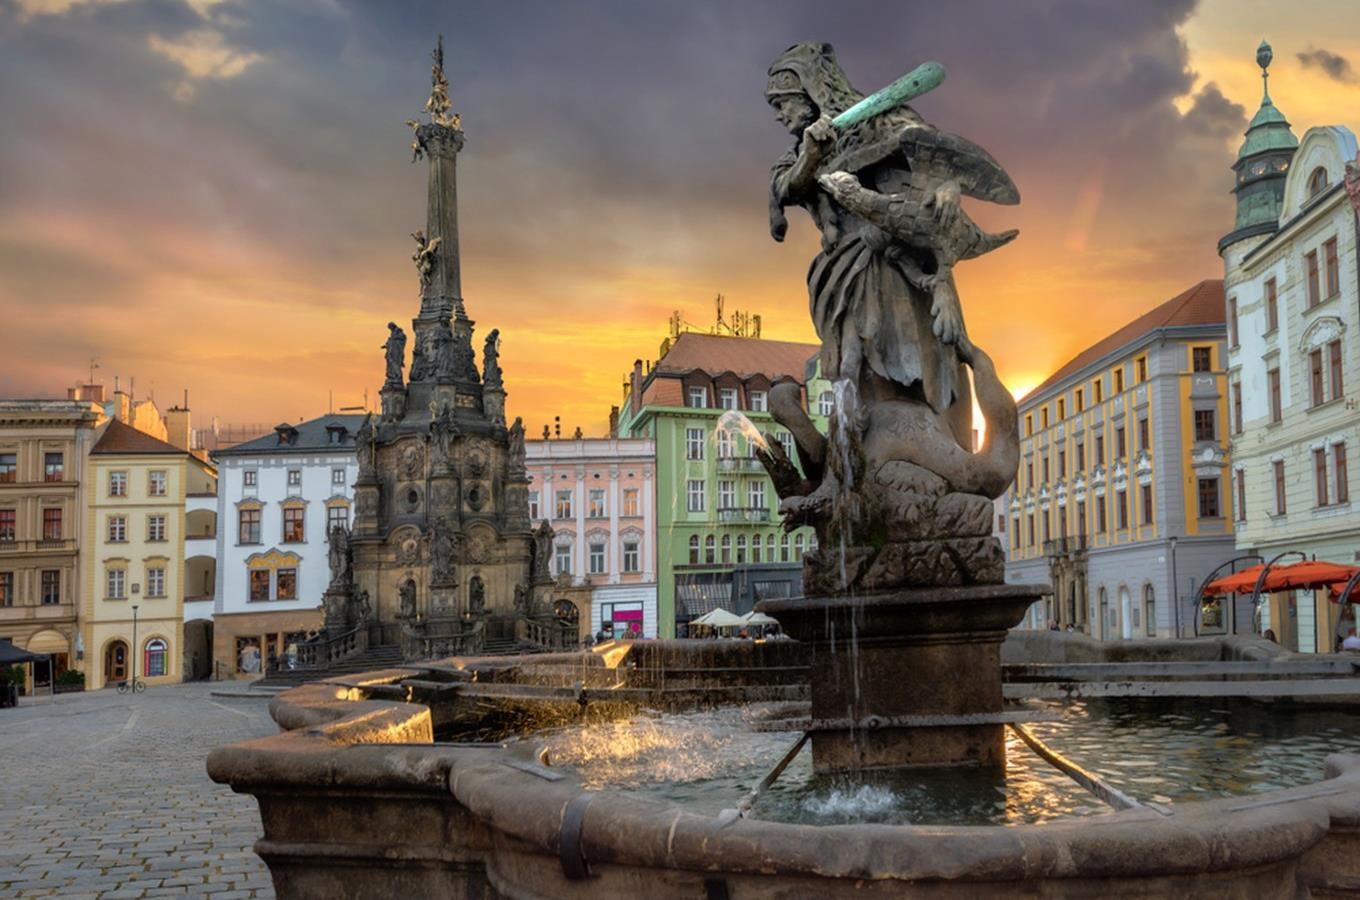 Soubor barokních kašen v Olomouci - nejstarší soubor kašen v České republice